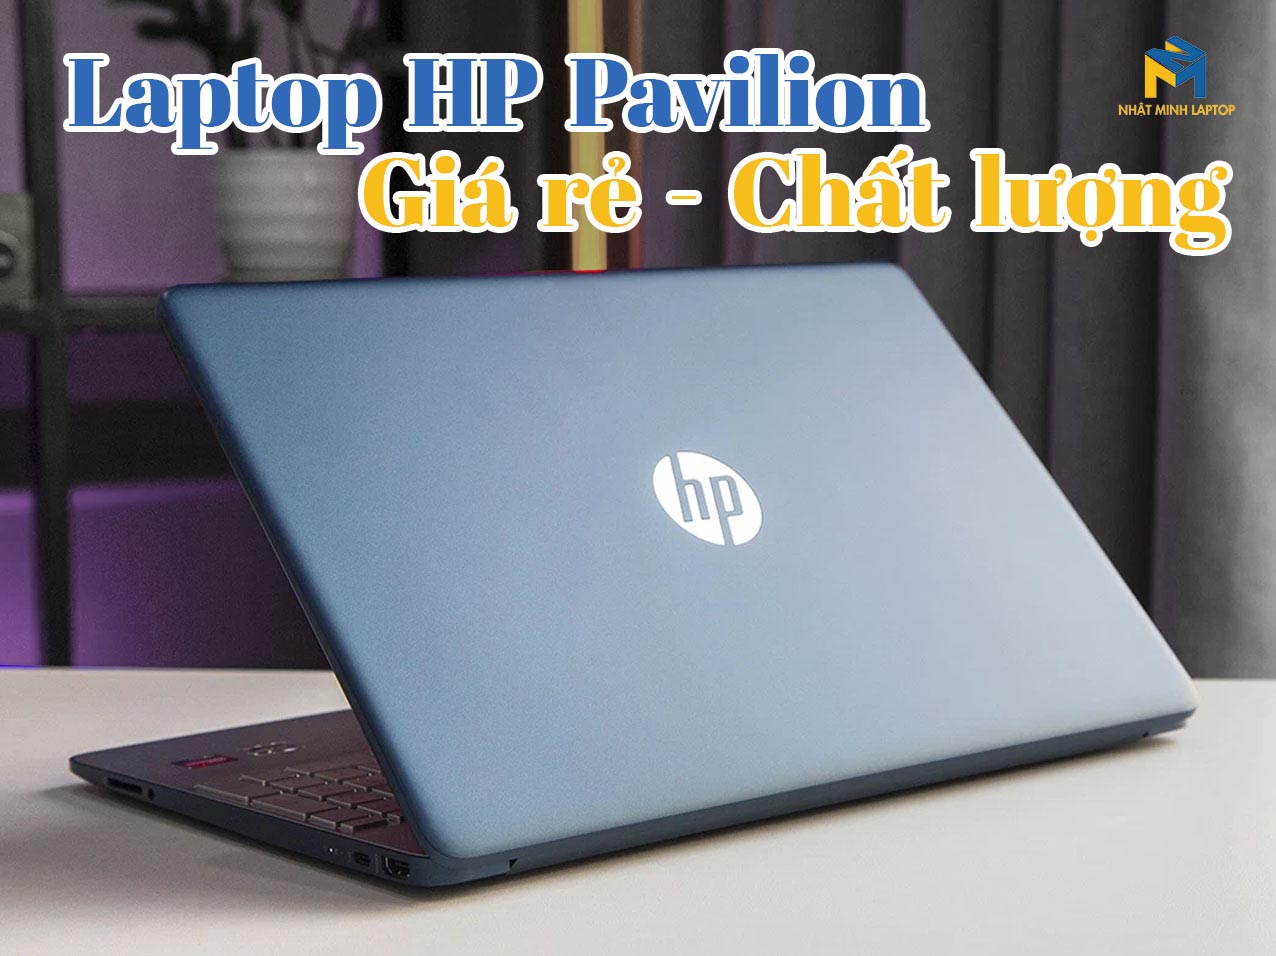 Laptop HP Pavilion khẳng định chất lượng qua 6 điểm nổi bật